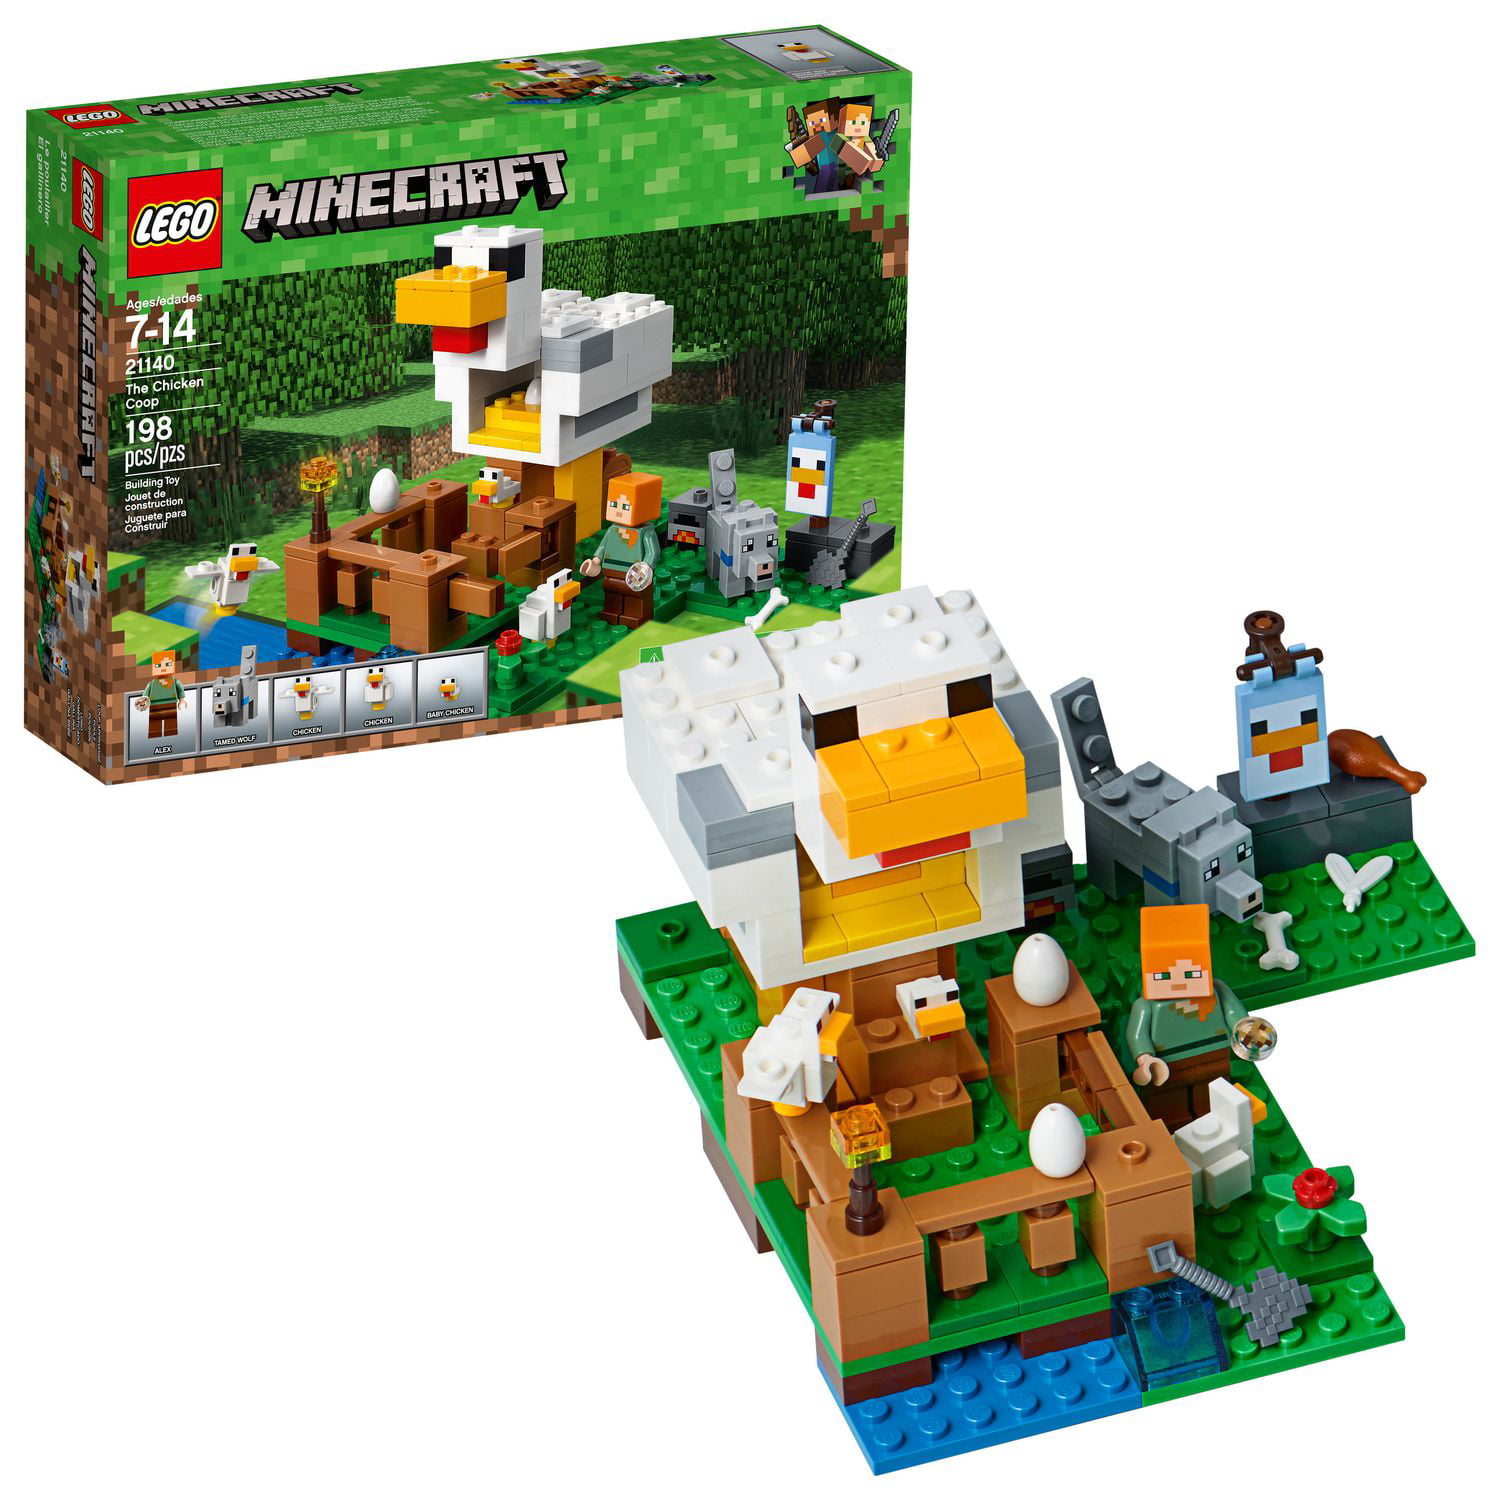 LEGO Minecraft The Chicken Coop 21140 Building Kit (198 Piece)